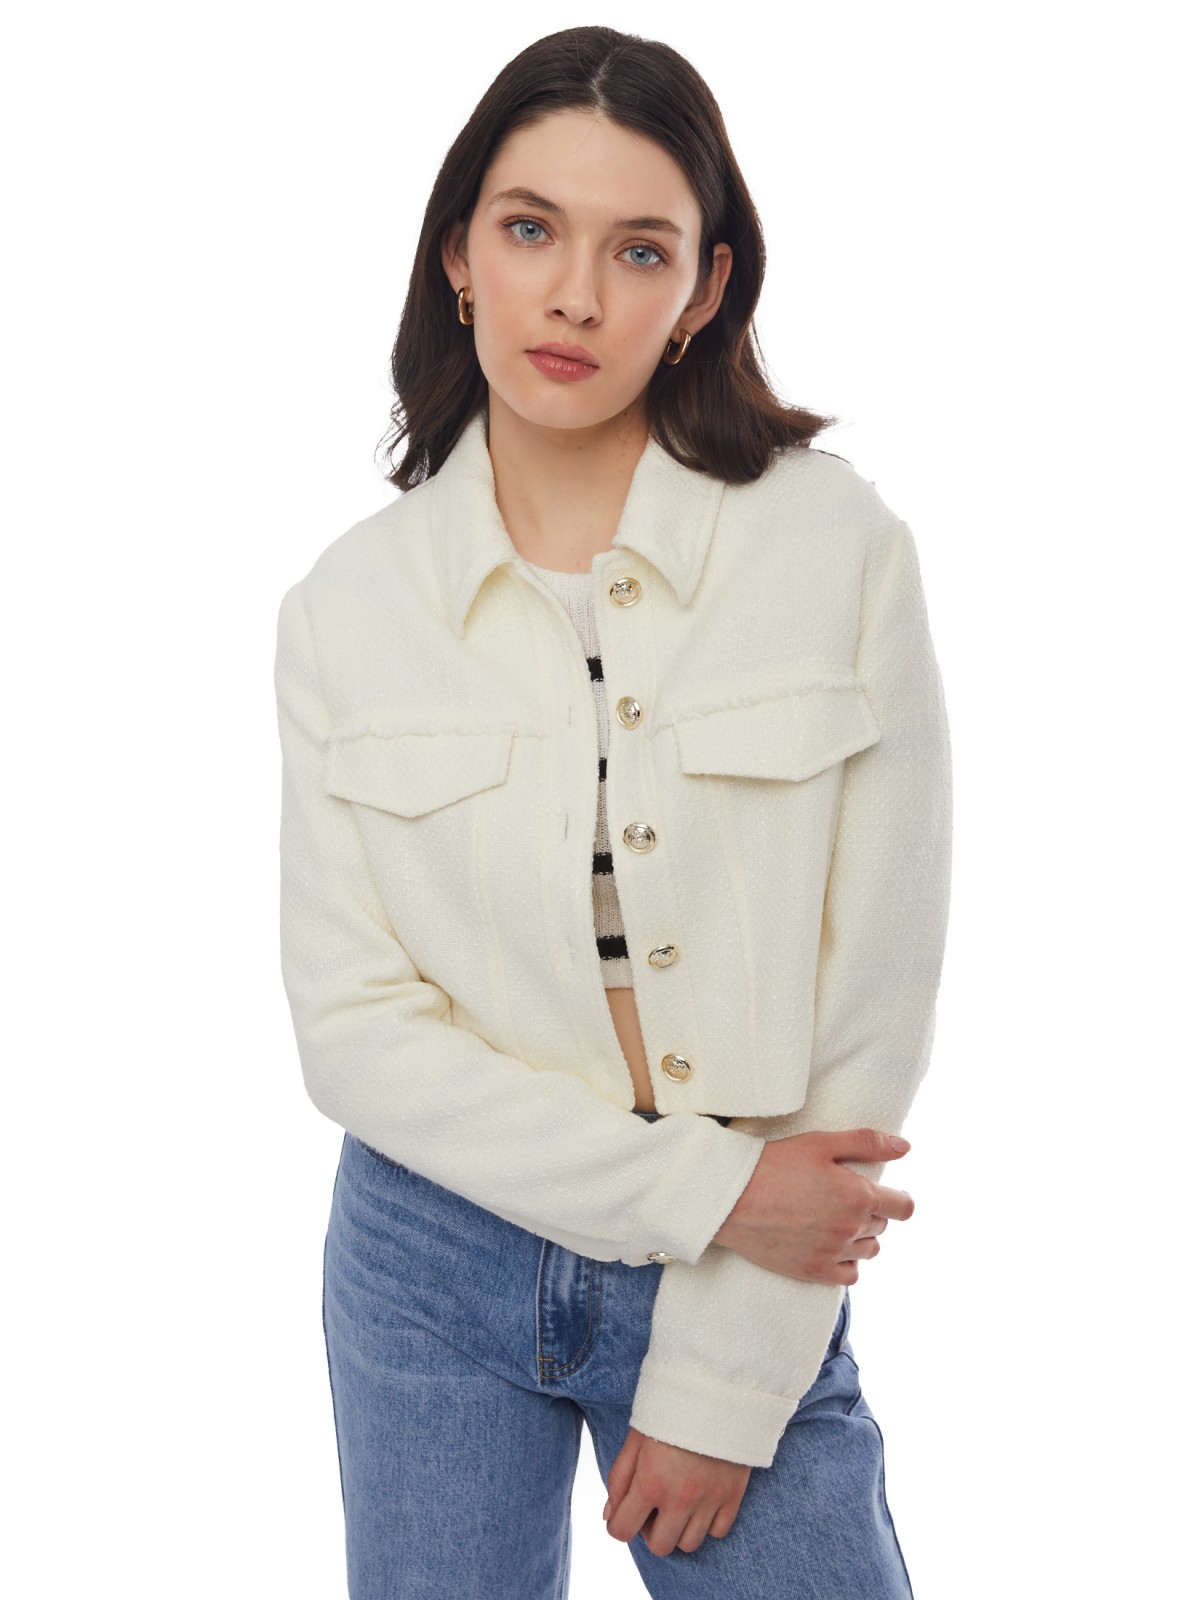 Укороченная куртка-жакет из жаккардовой ткани zolla 024135470061, цвет молоко, размер XL - фото 1